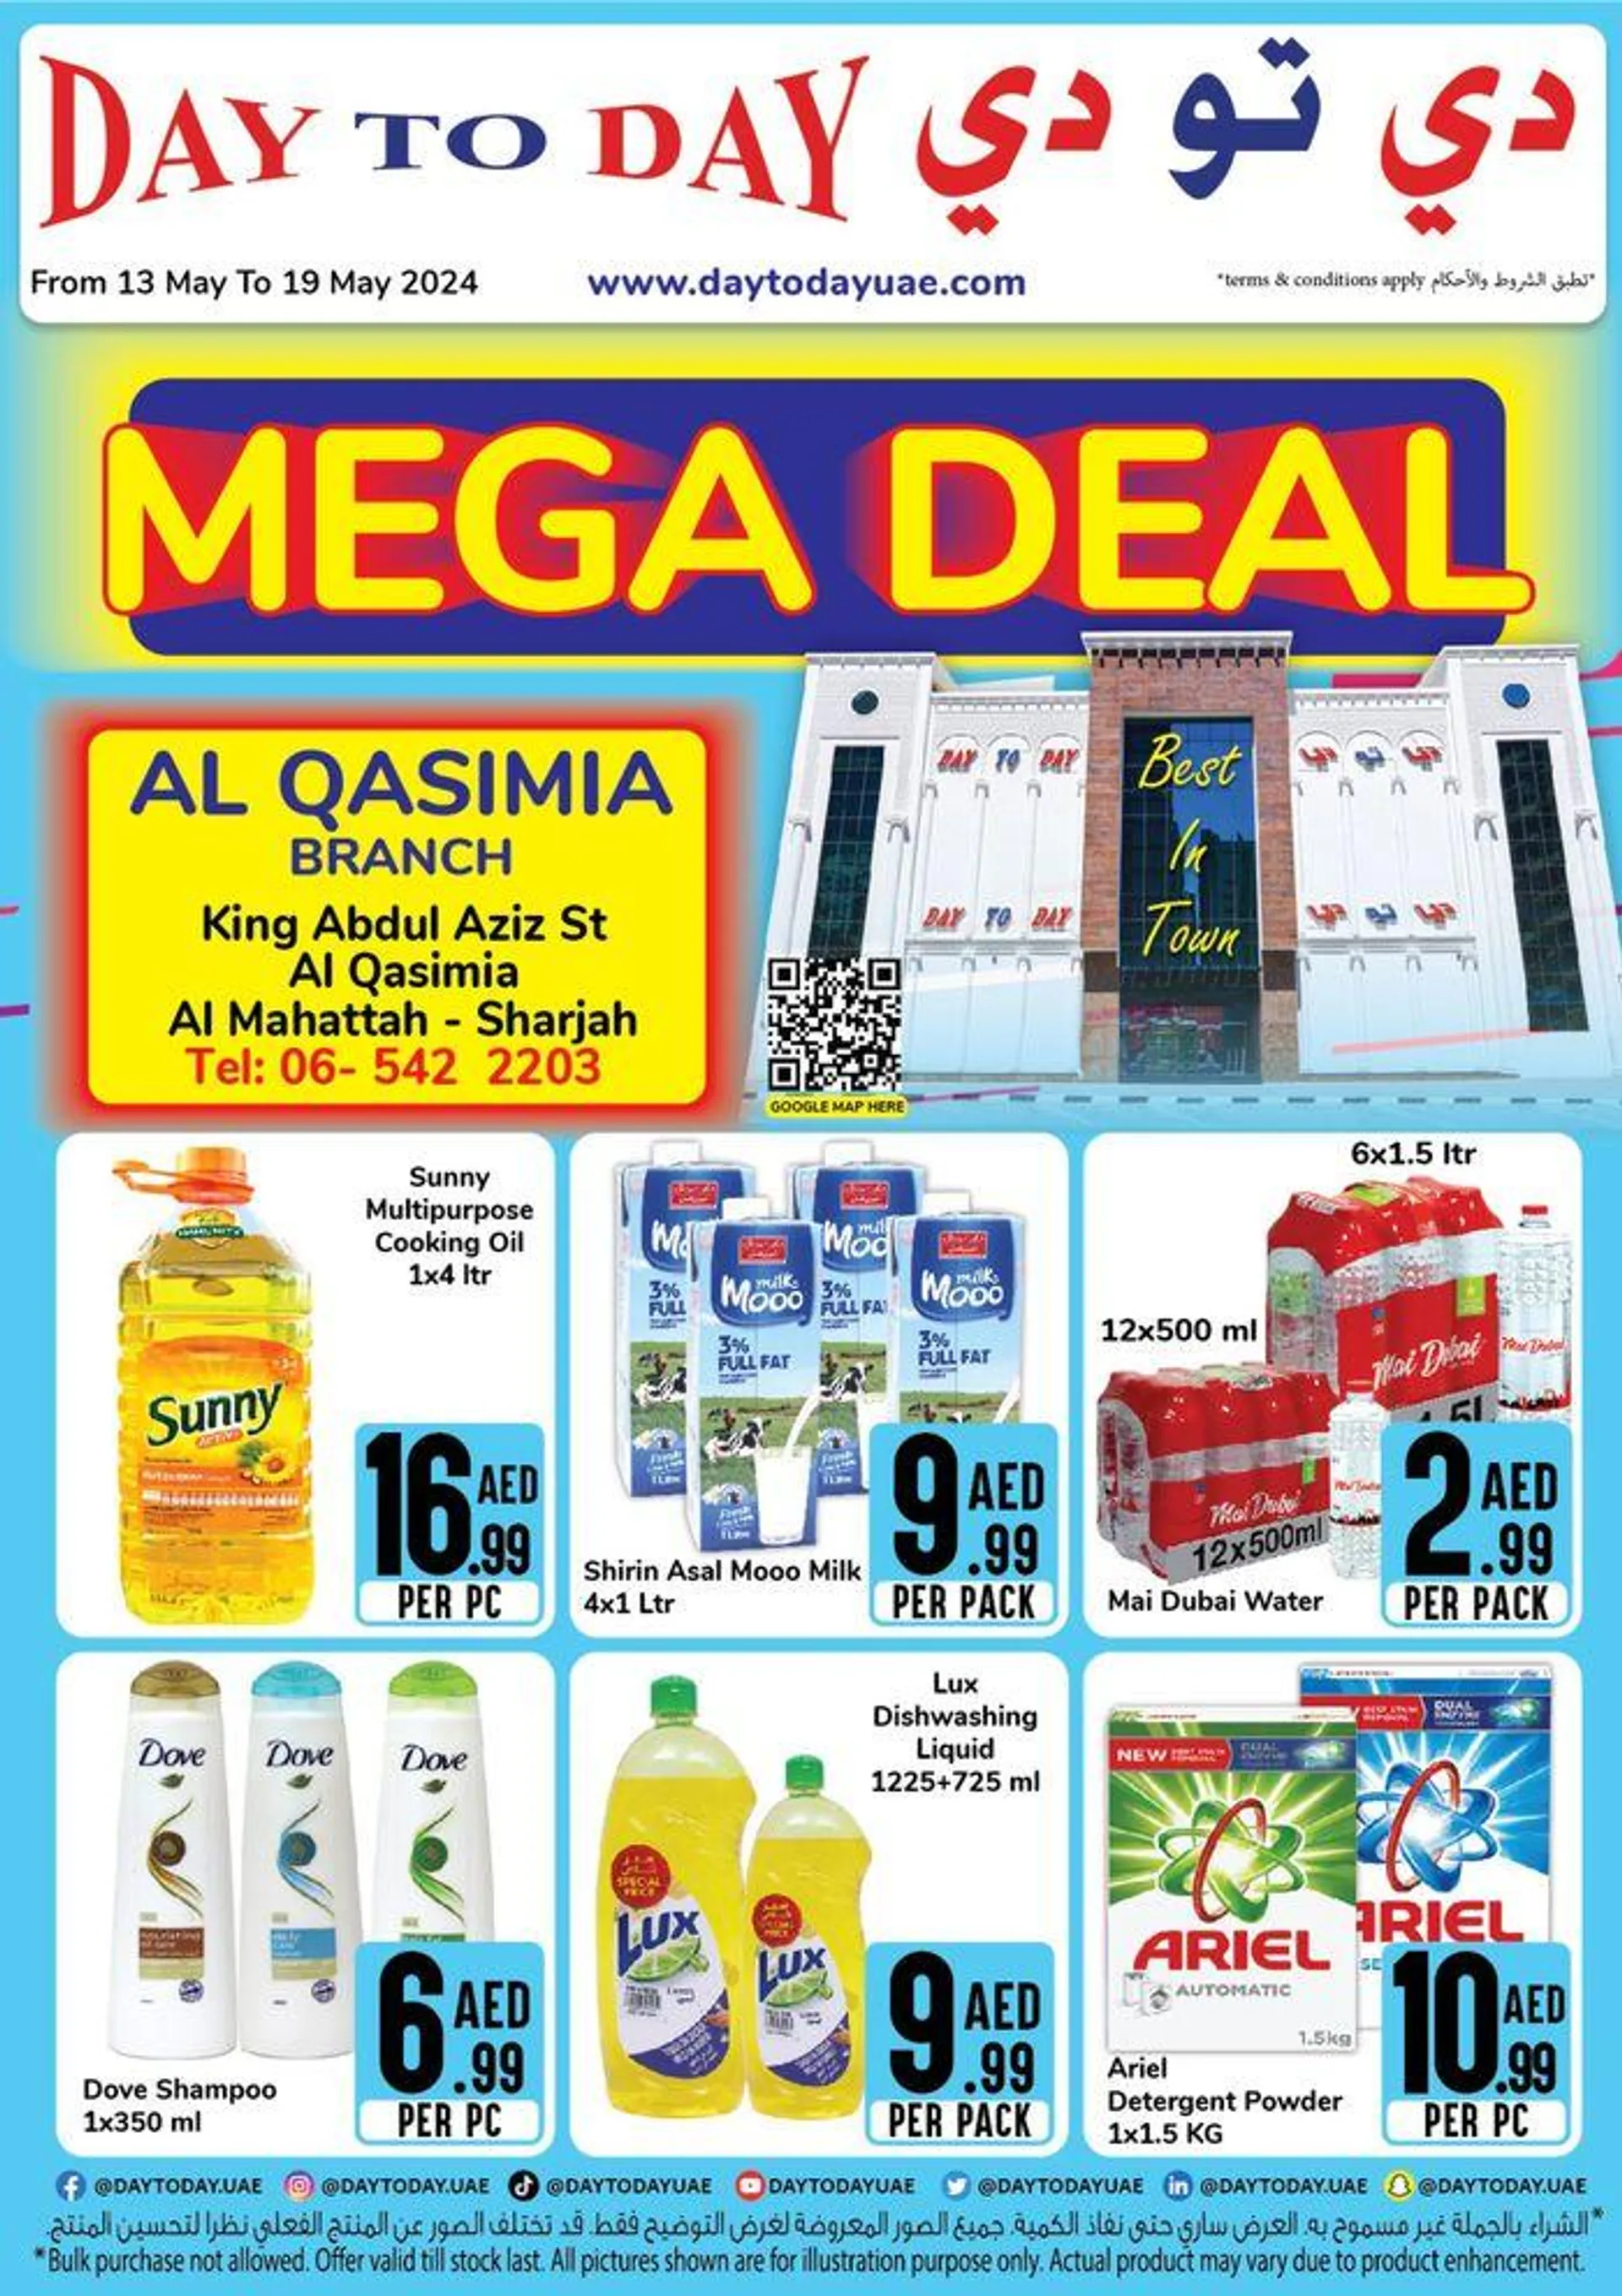 Mega Deal! Al Qasimia - 1